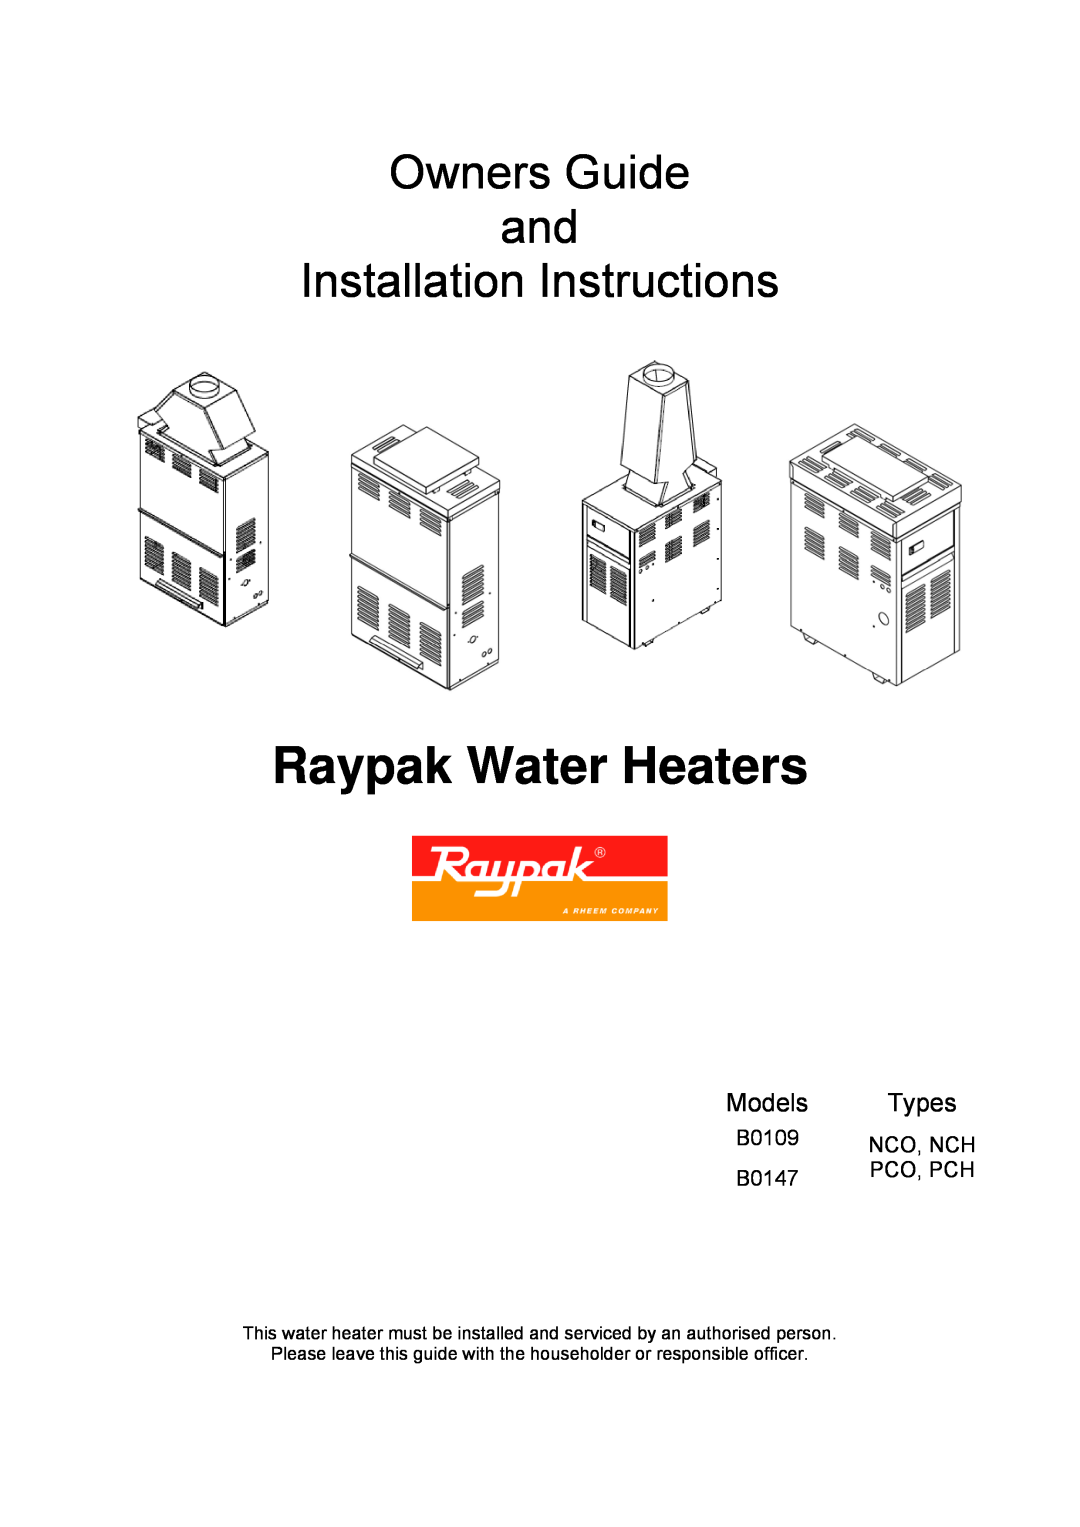 Raypak B0109 installation instructions Raypak Water Heaters, Owners Guide and Installation Instructions, Models, Types 